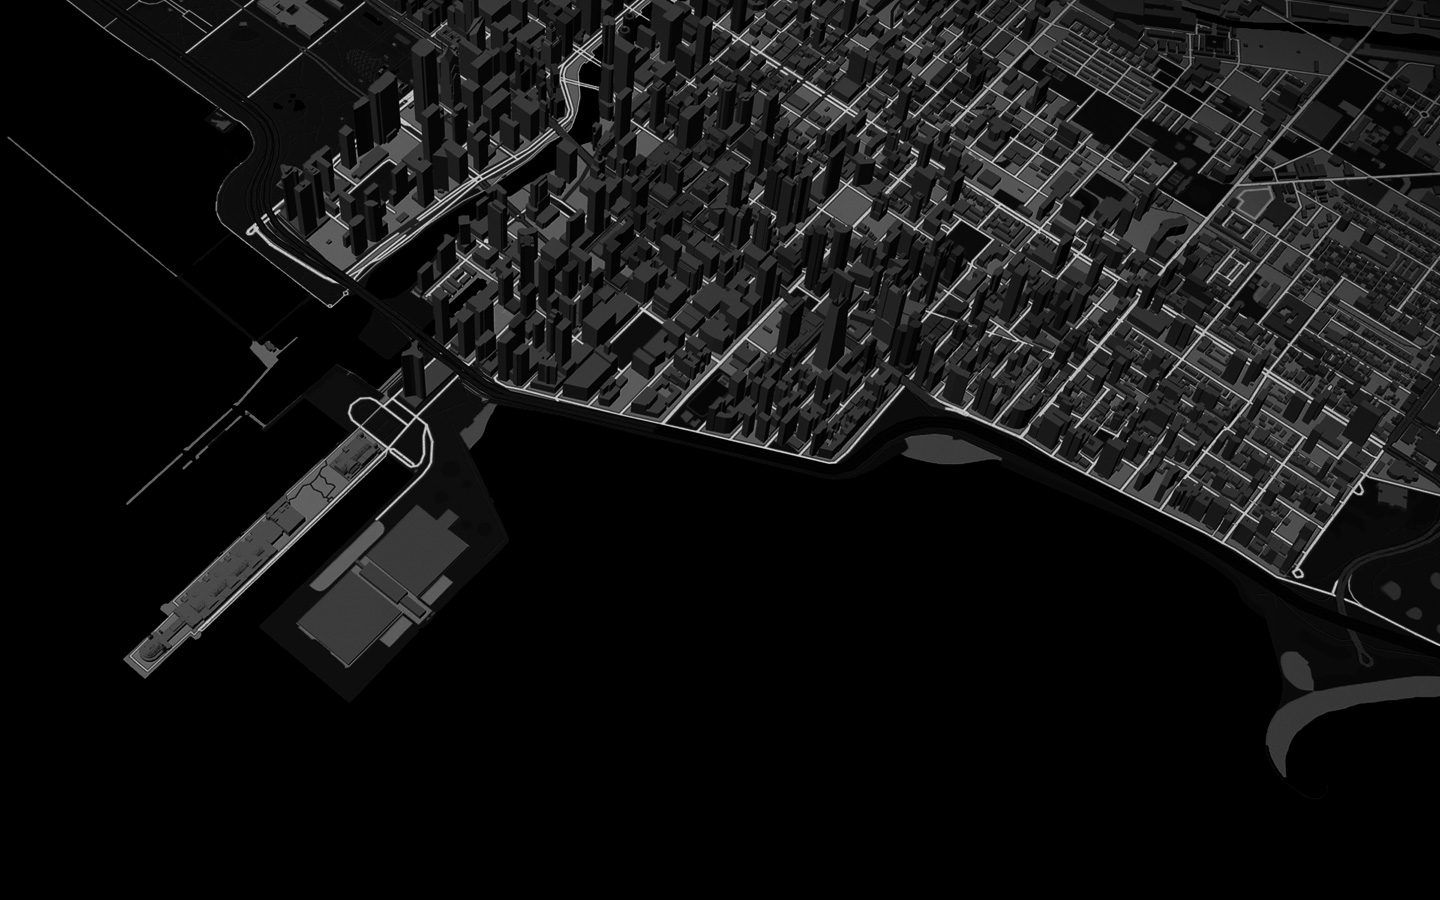 Анімація лінії, що представляє маршрут бігунів у вигляді міського пейзажу на тривимірних картах